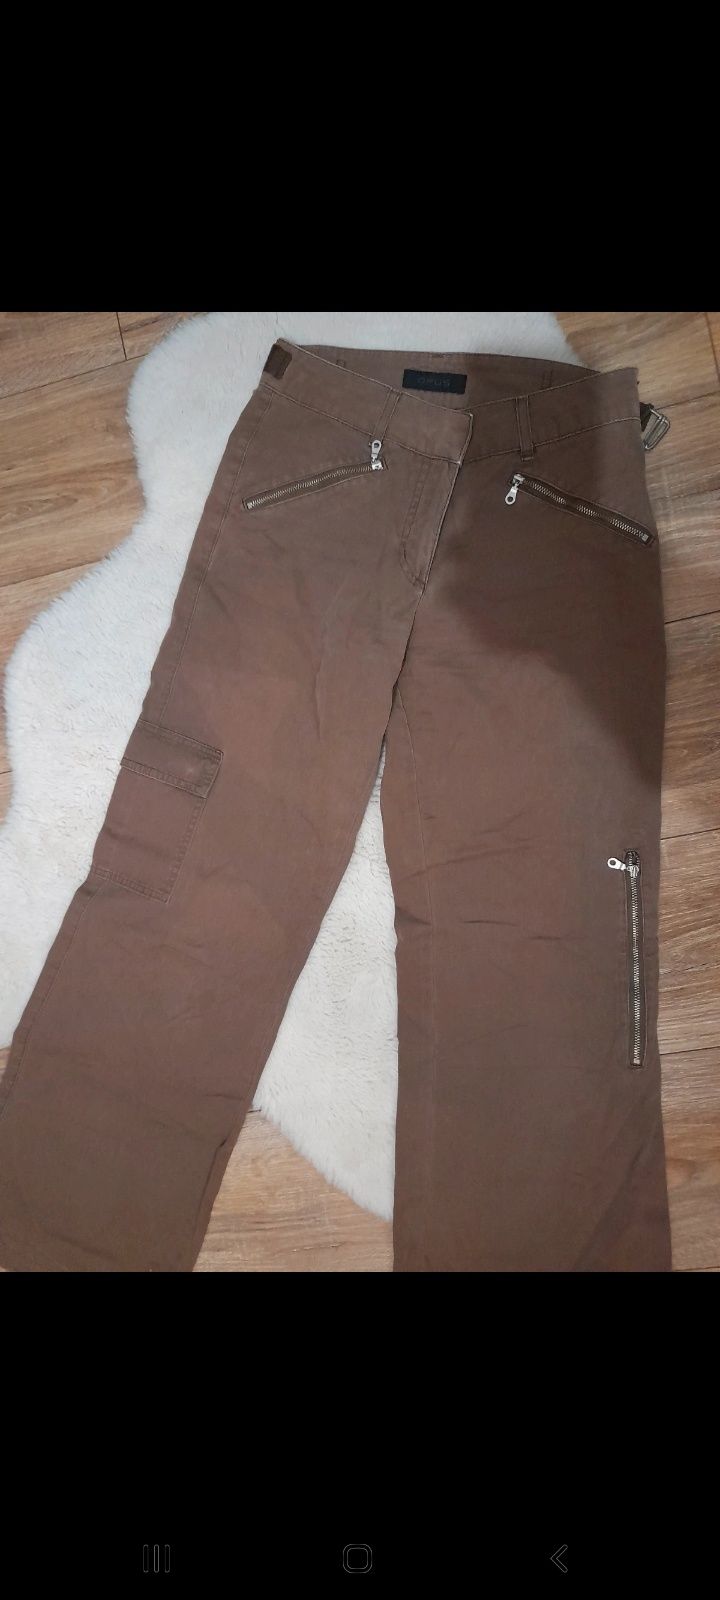 Spodnie cargo - z szerokimi nogawkami, brązowe